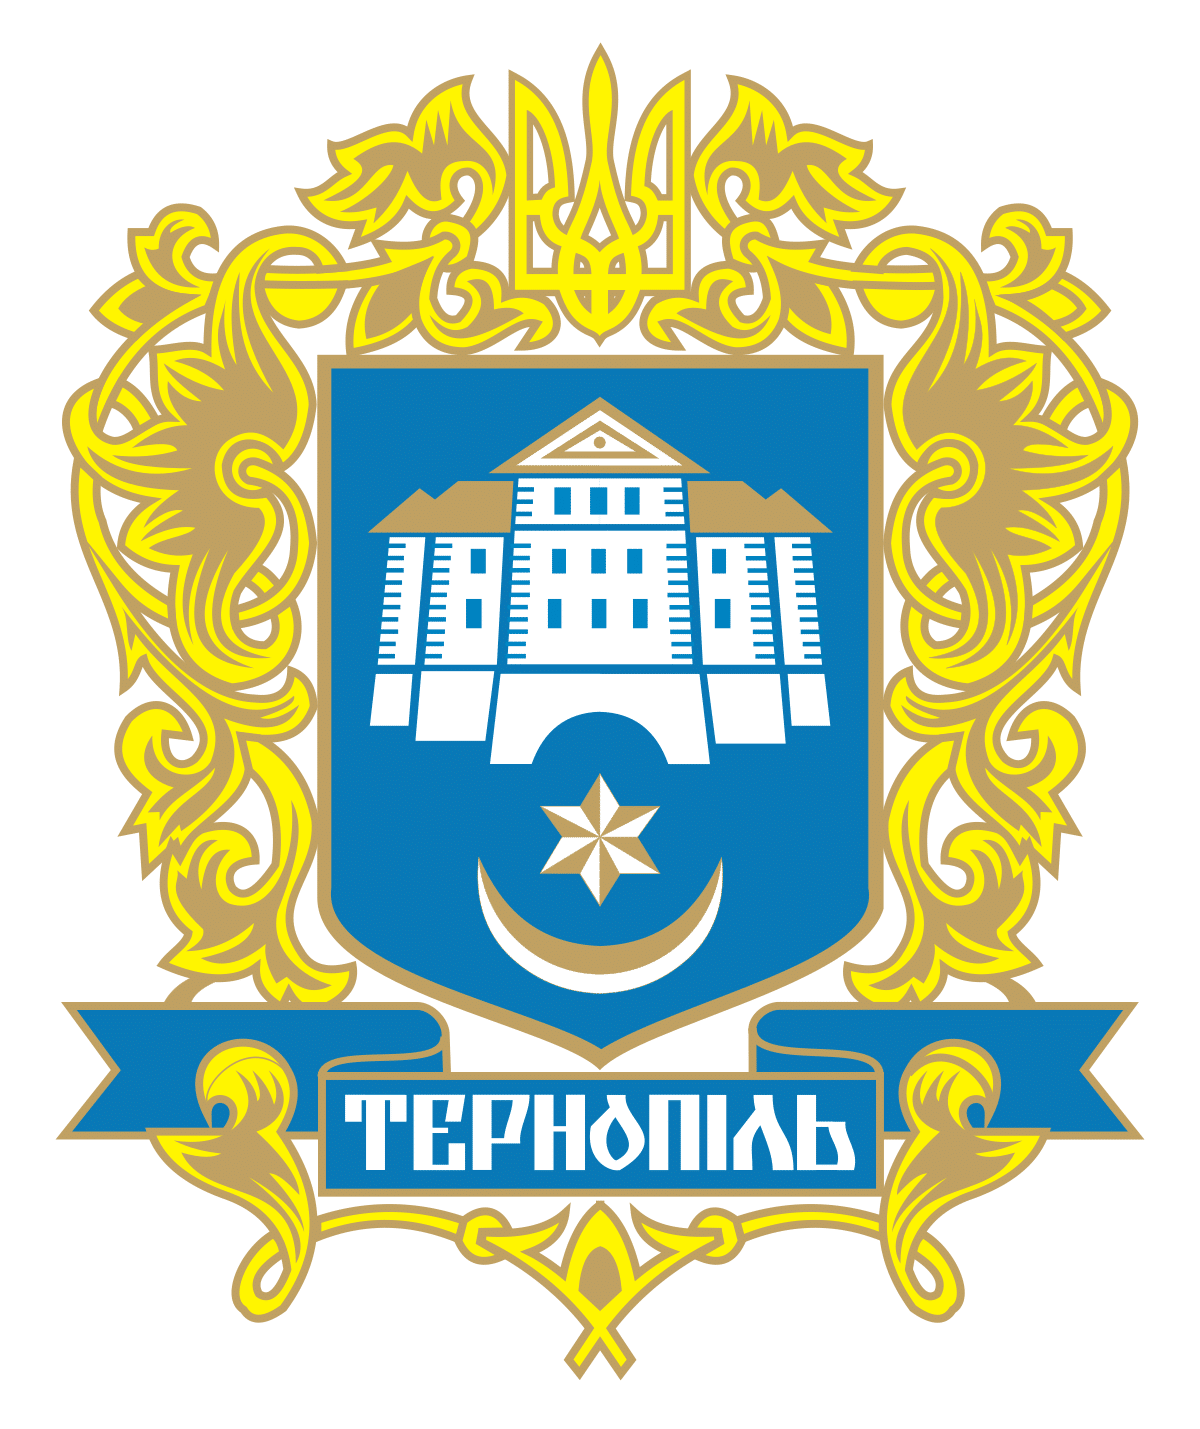 Тернополь